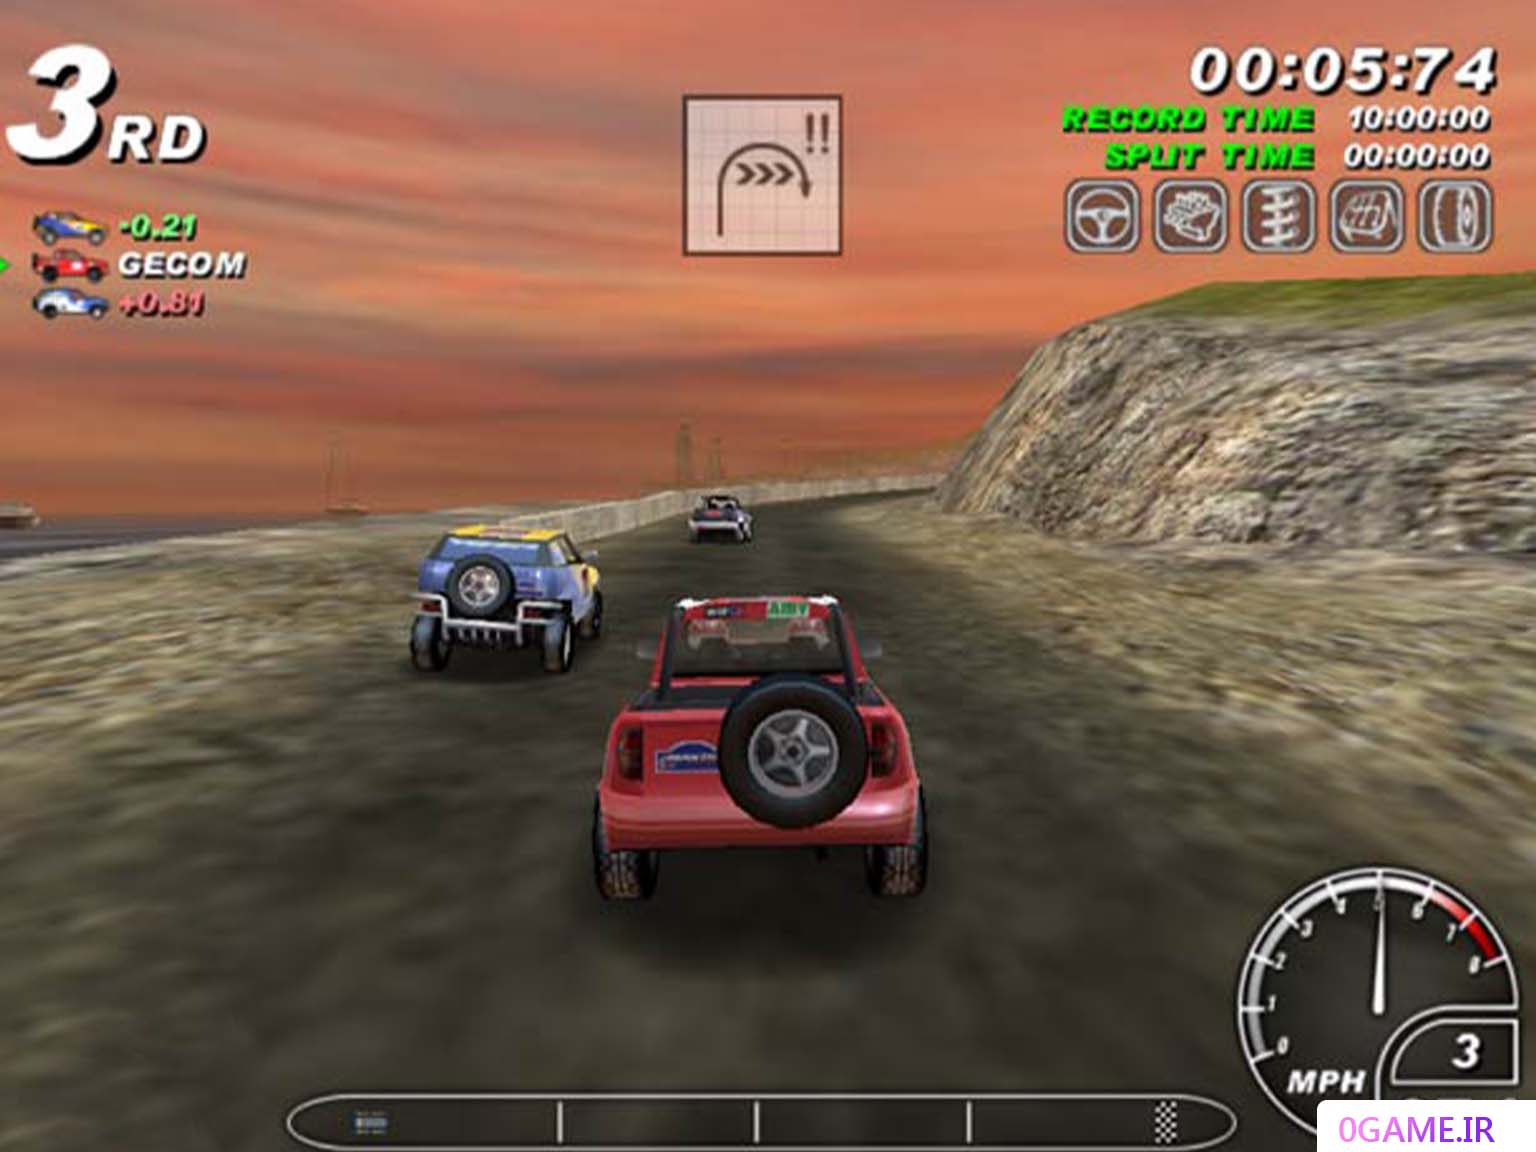 دانلود بازی مستر رالی (Master Rallye) نسخه کامل برای کامپیوتر